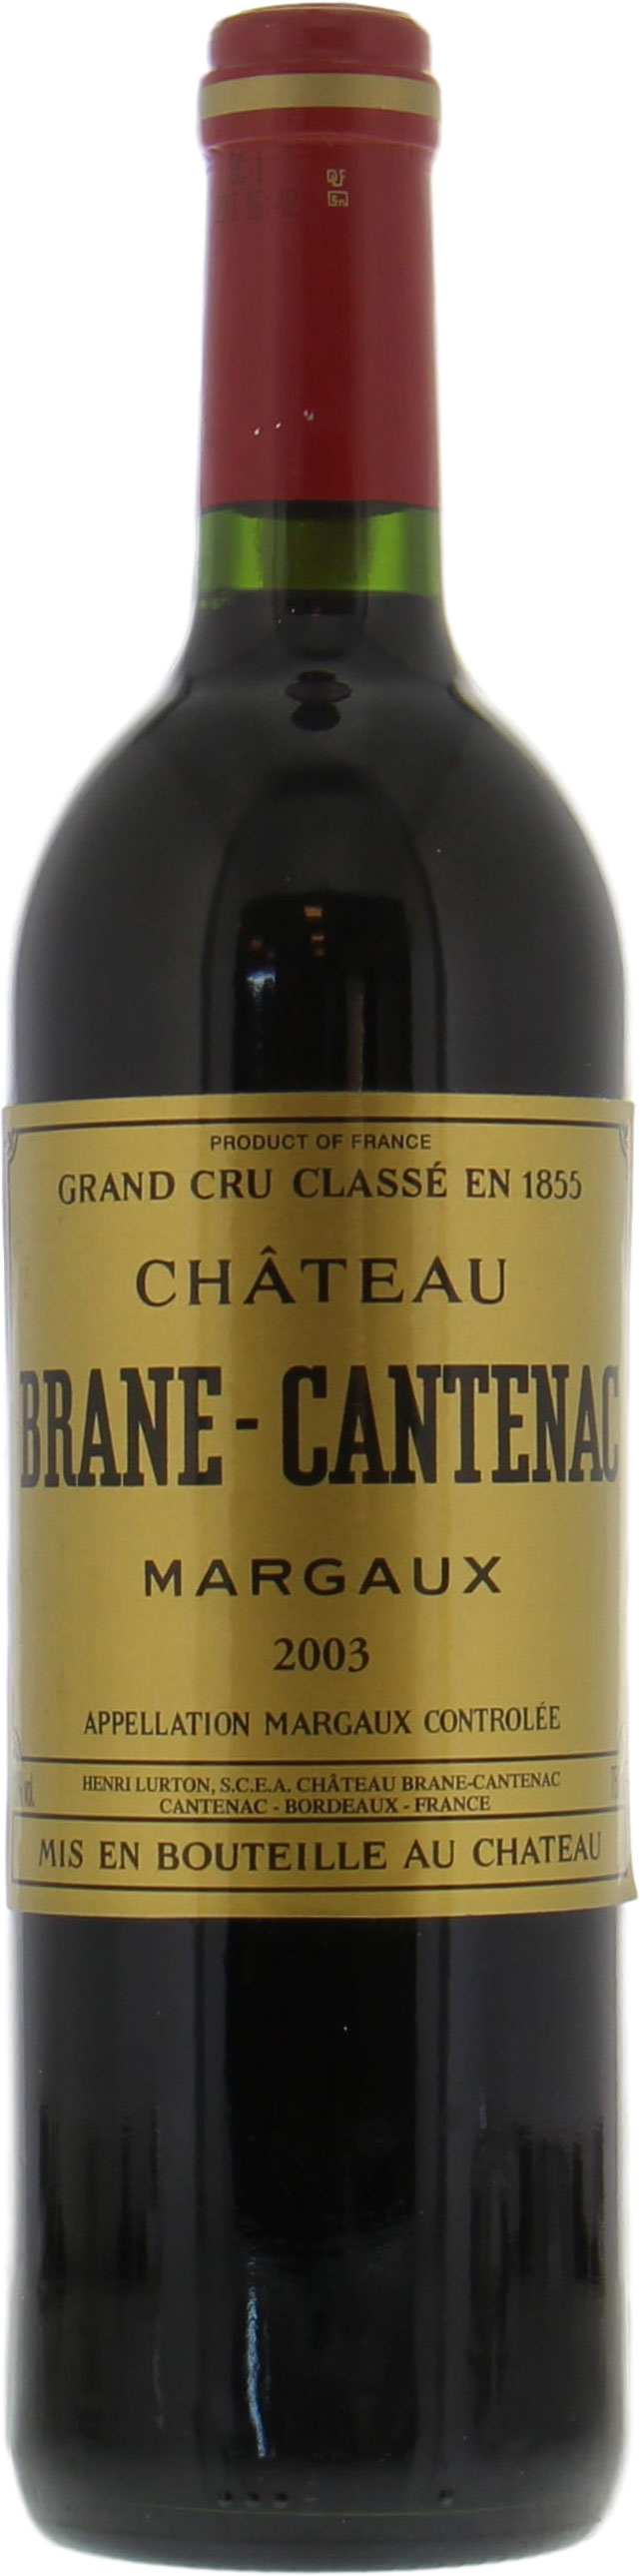 Chateau Brane Cantenac - Chateau Brane Cantenac 2003 Perfect